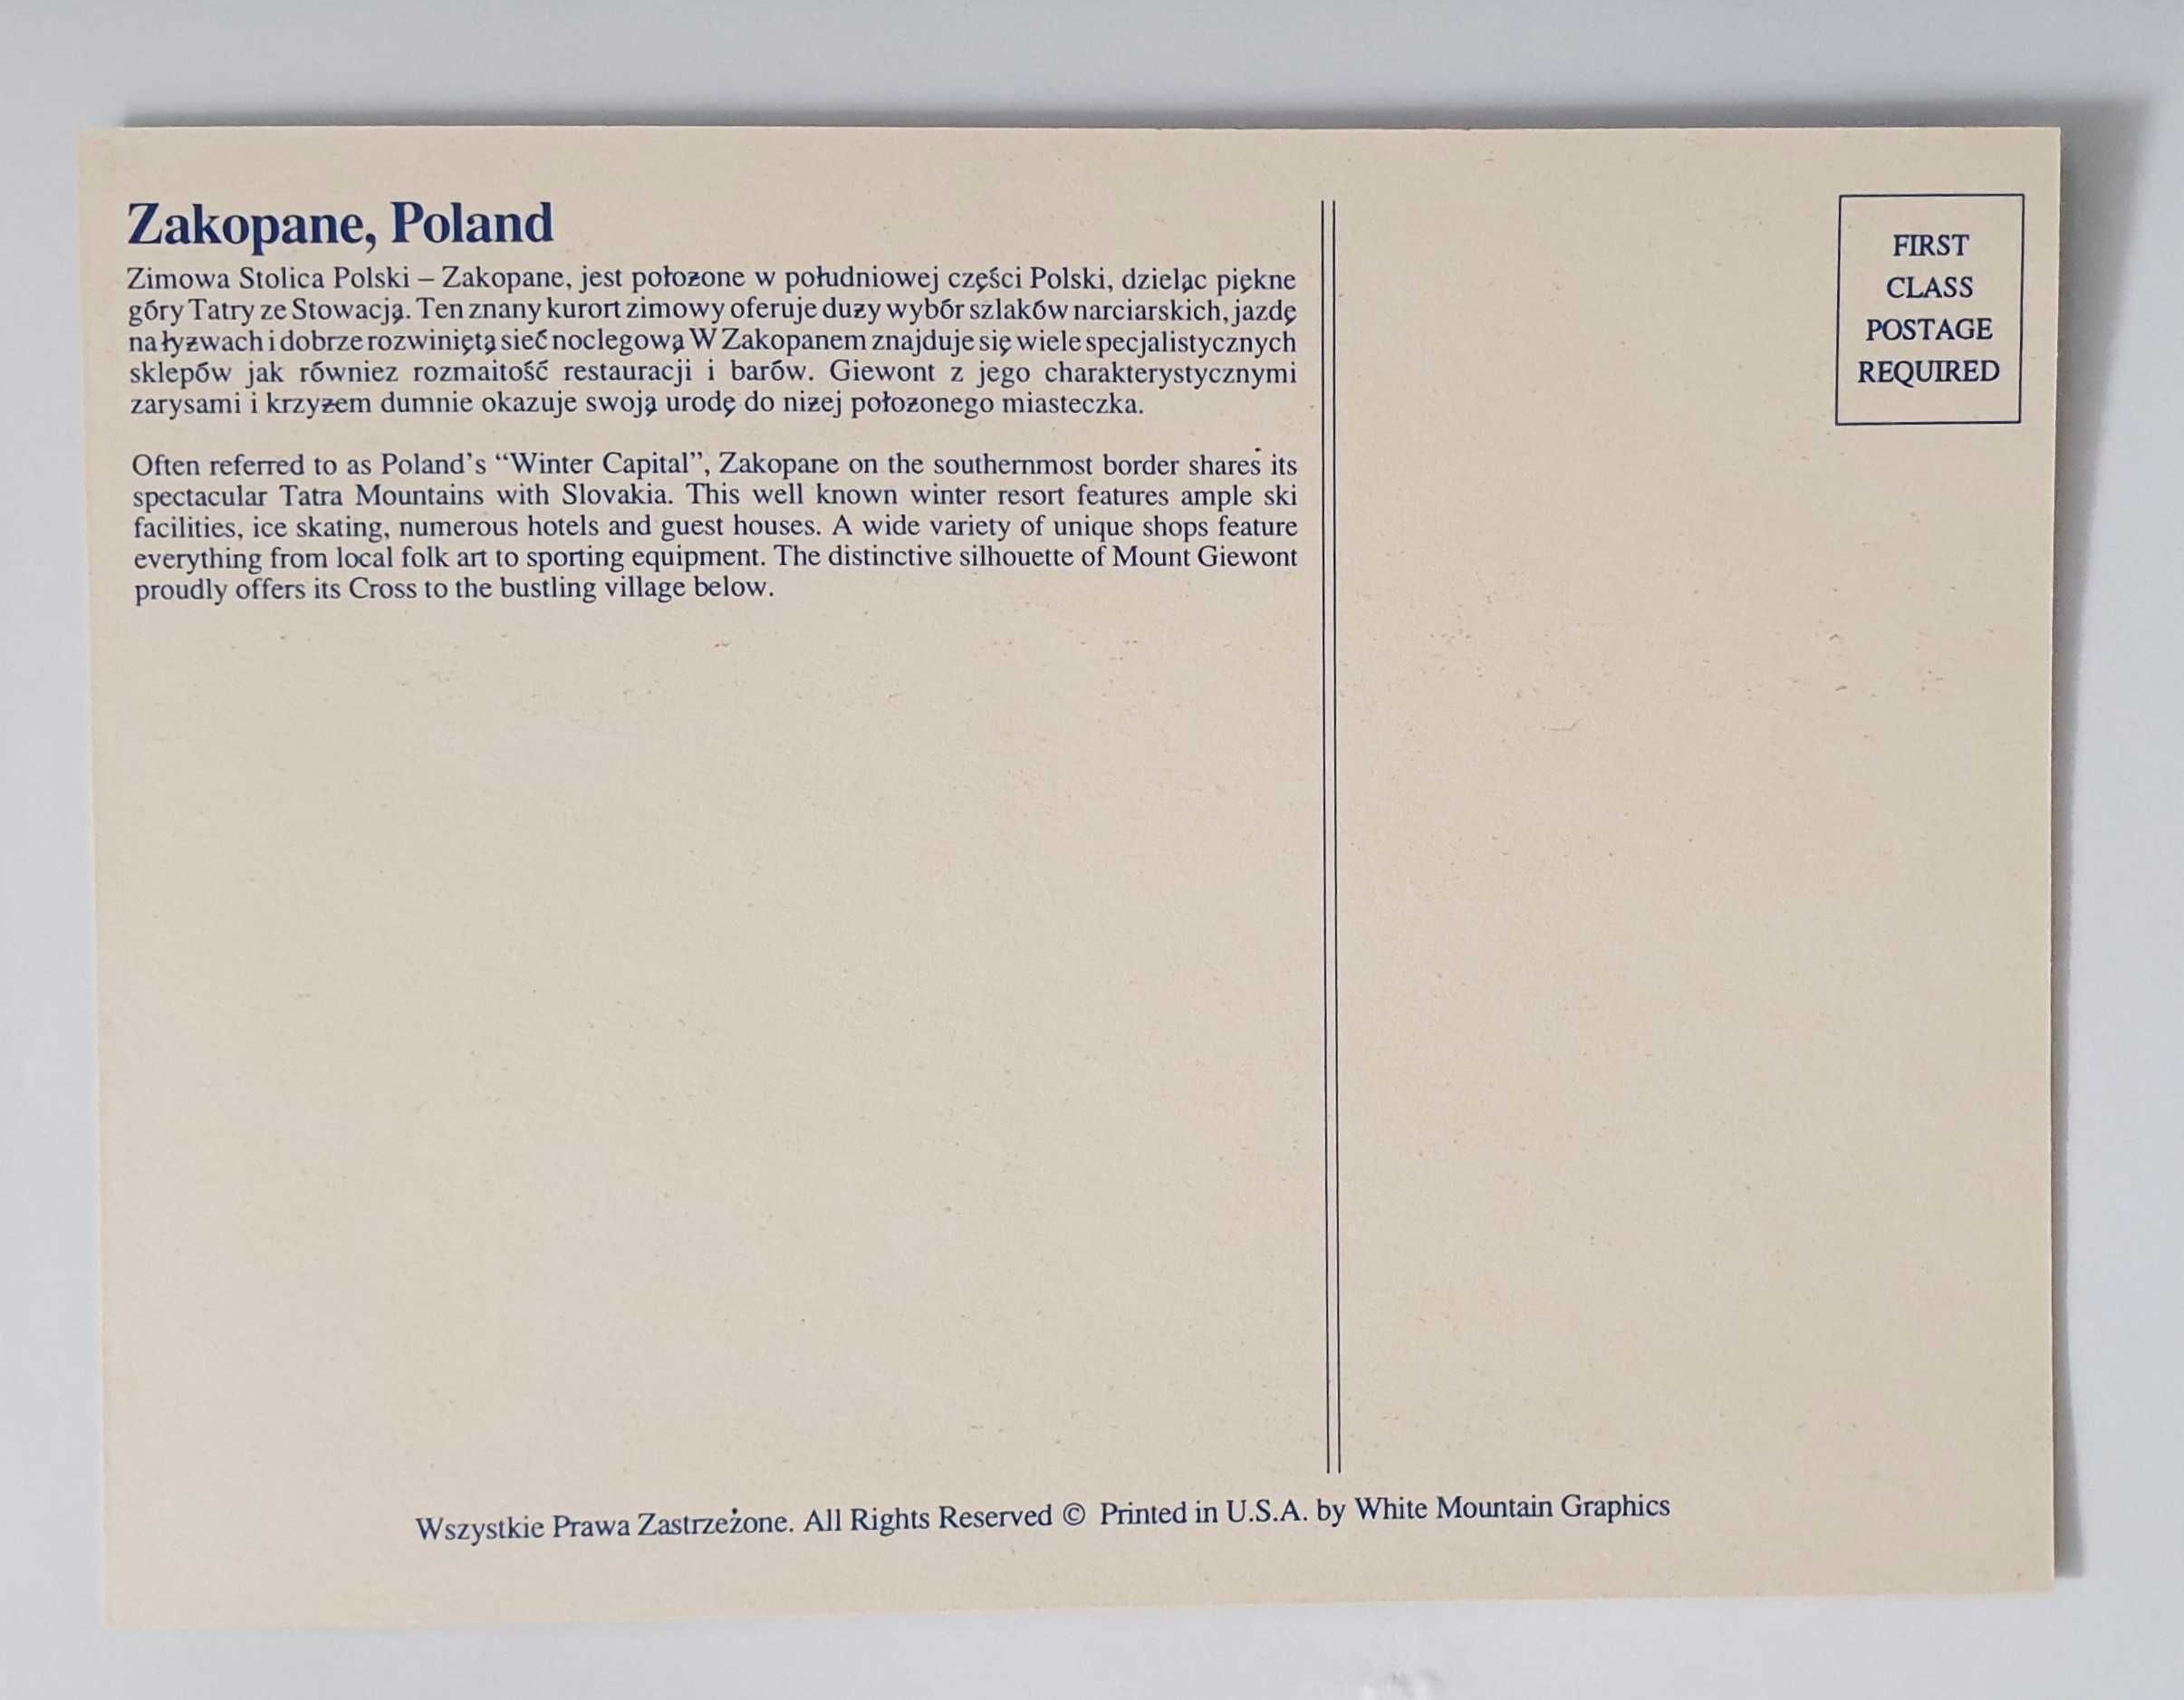 Zakopane – karta pocztowa USA lata 80-90. XX w.